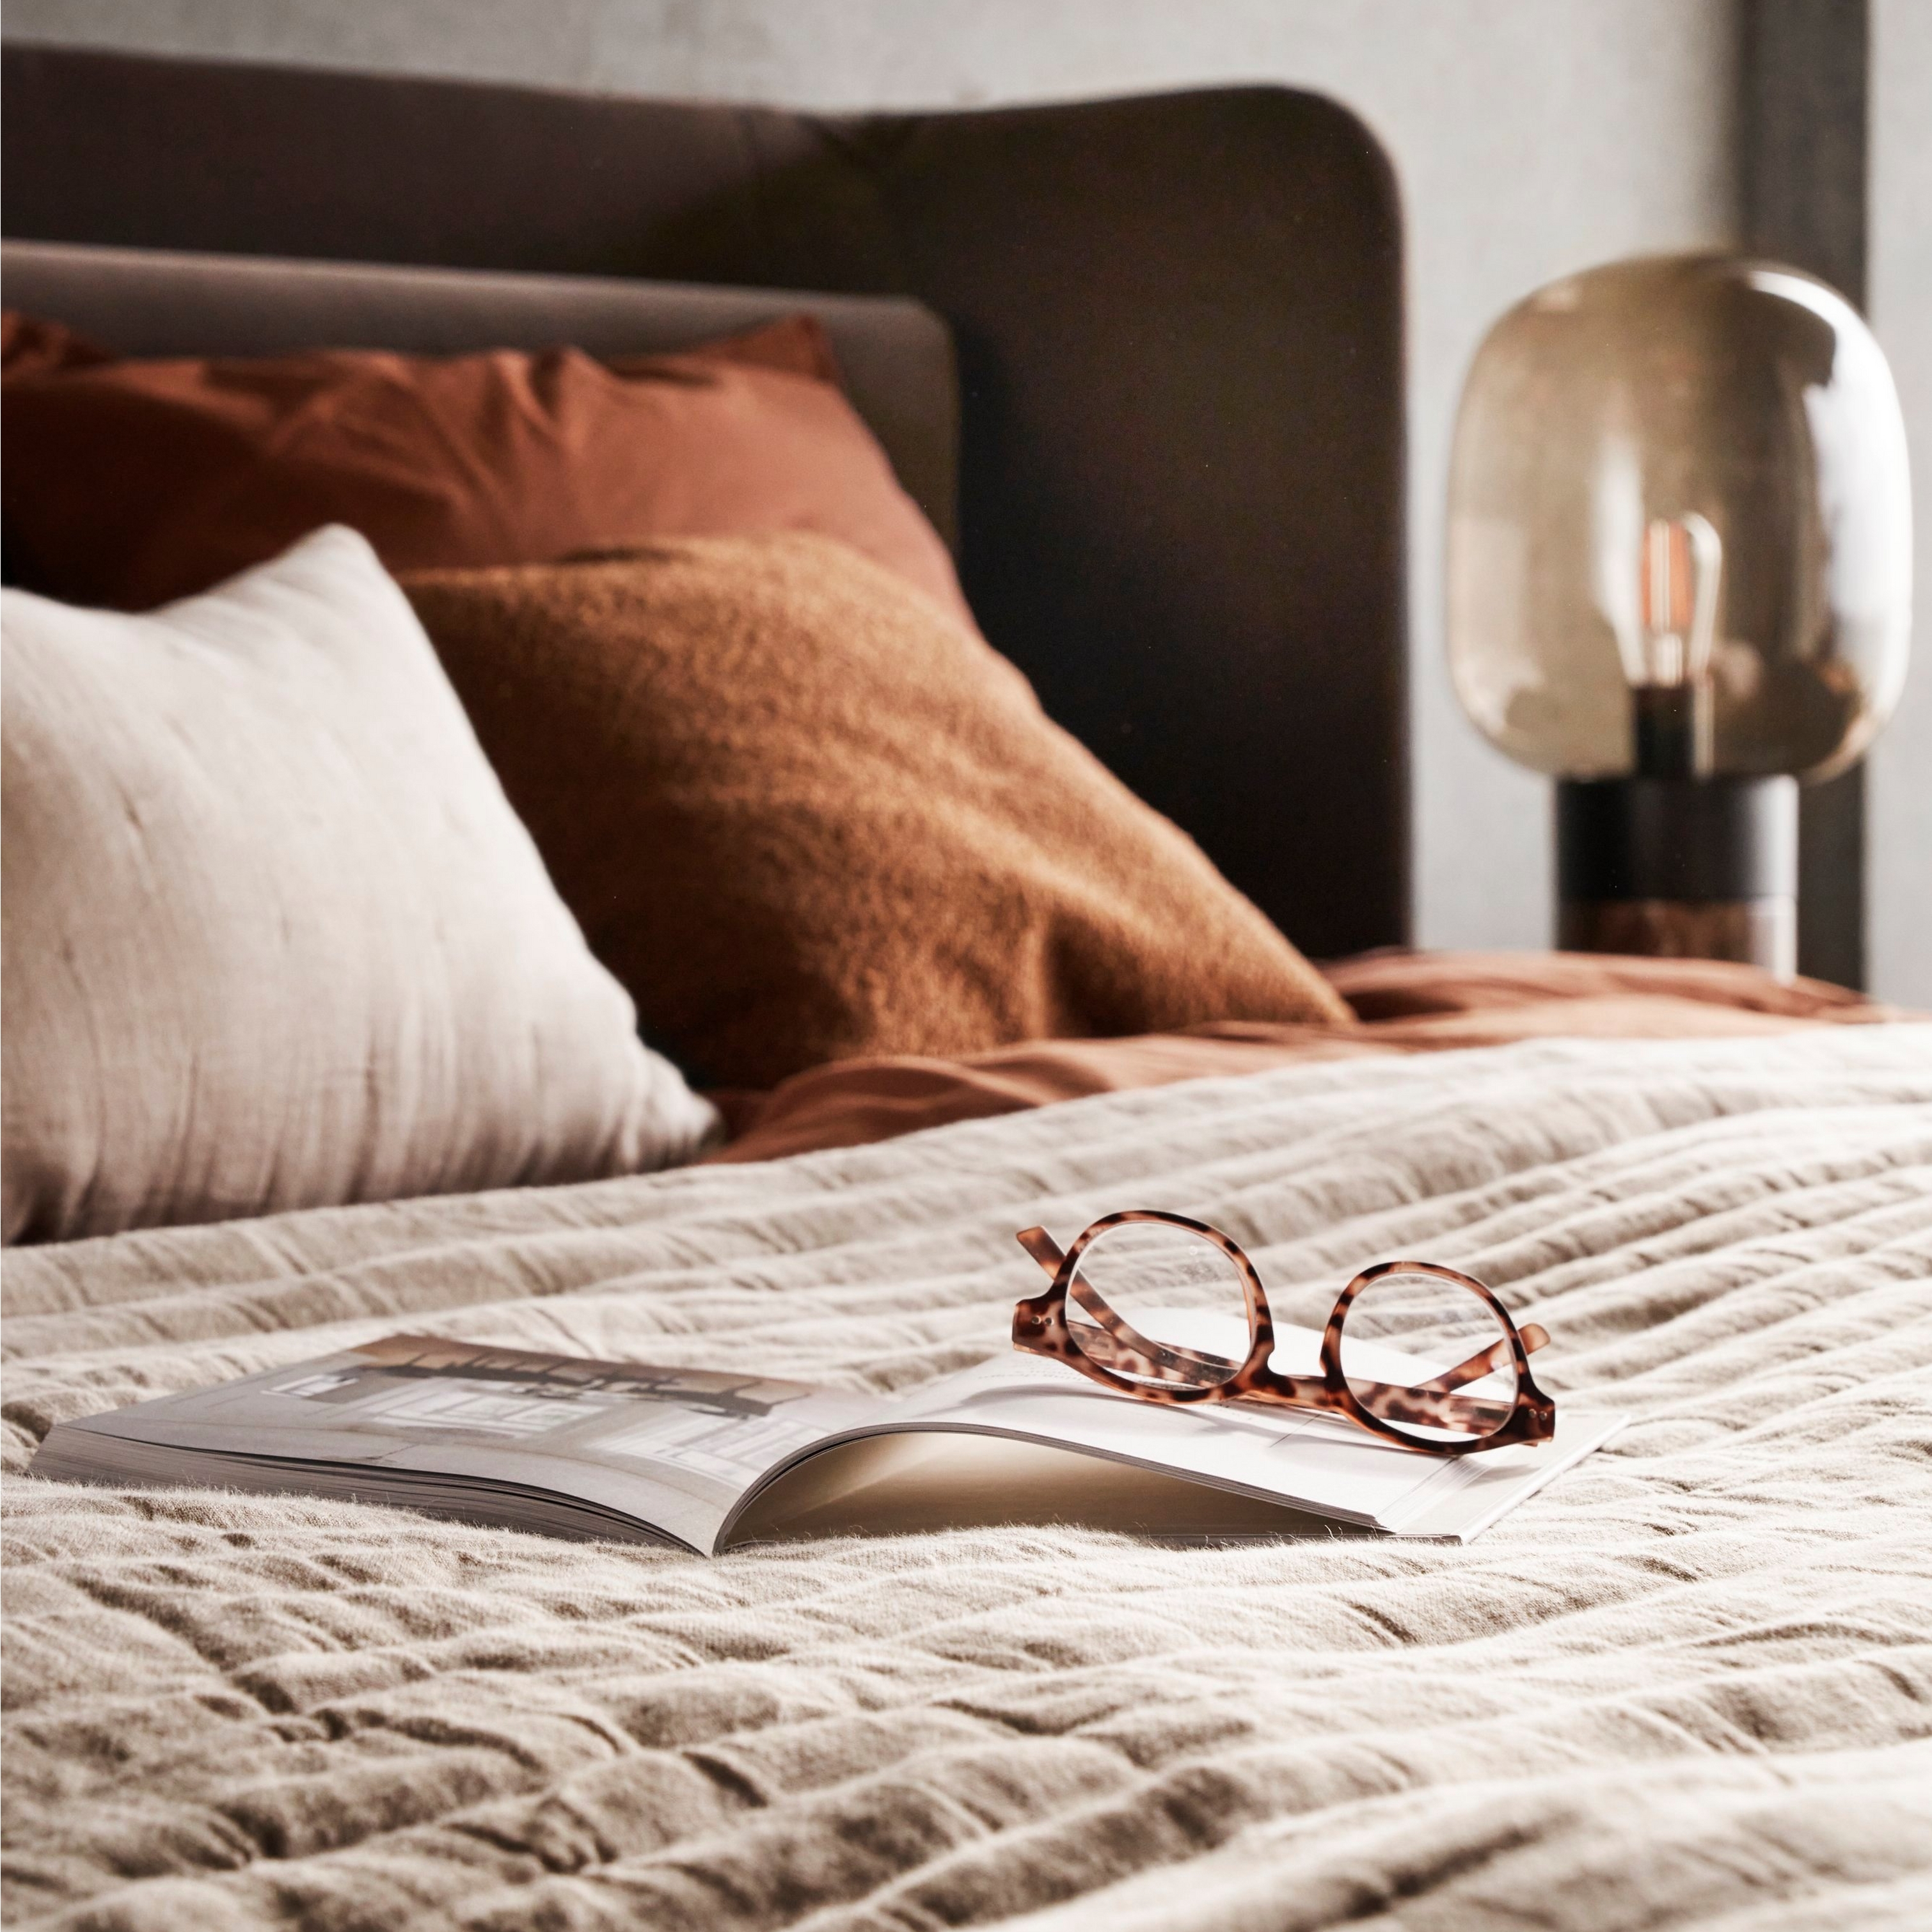 Posteľ s textúrovanou posteľnou bielizňou, okuliare na otvorenej knihe a jemné nočné osvetlenie.